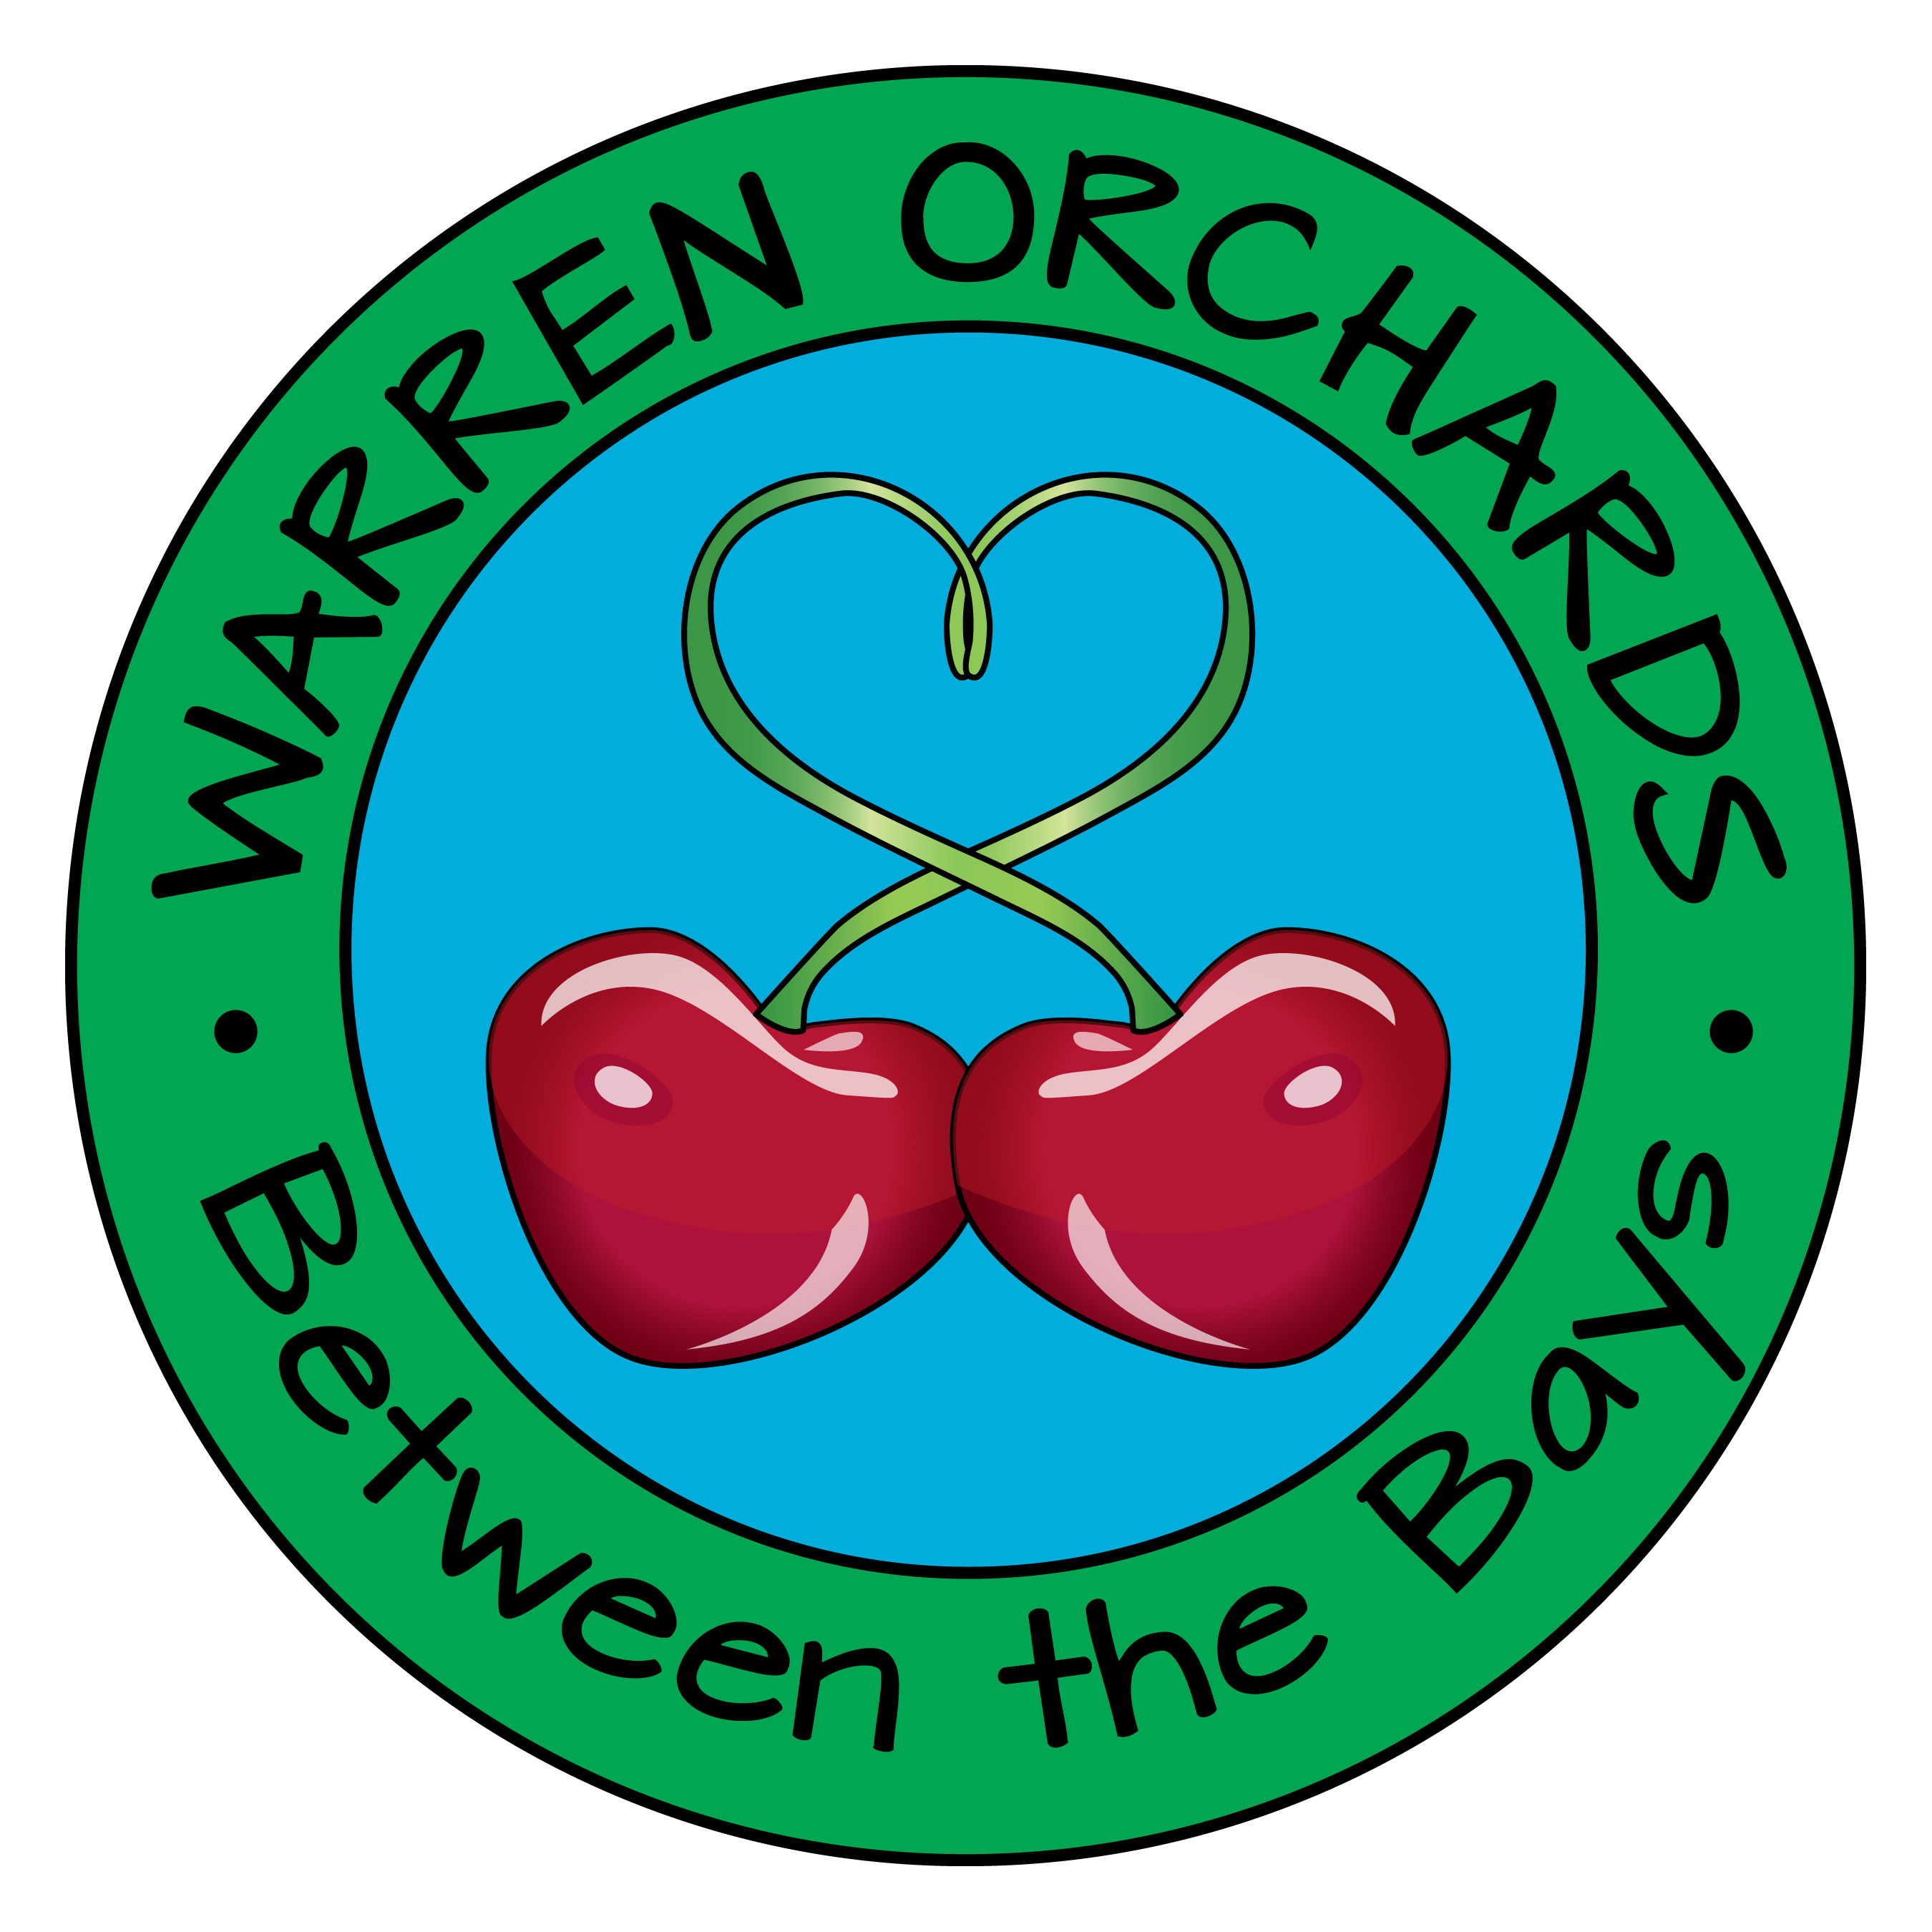 Between the Bay-Warren Orchard (Tier 4)